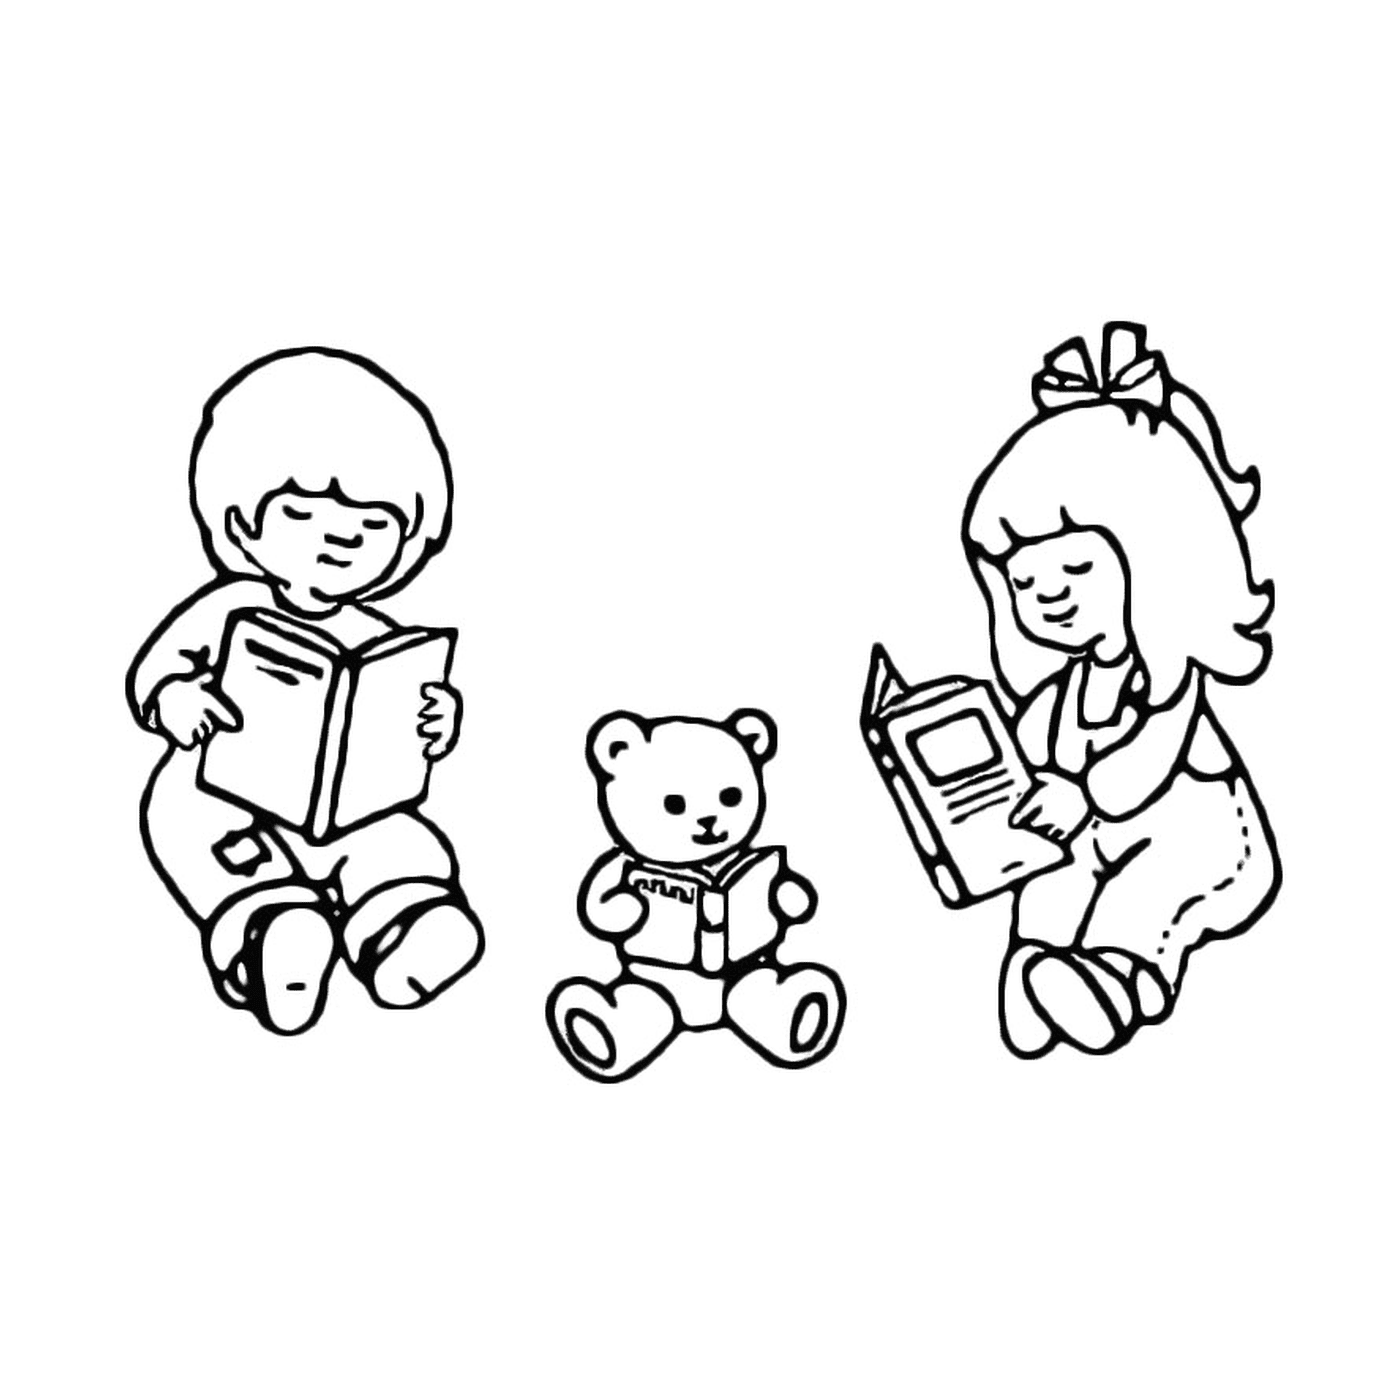   Trois enfants lisent un livre avec un ours en peluche 